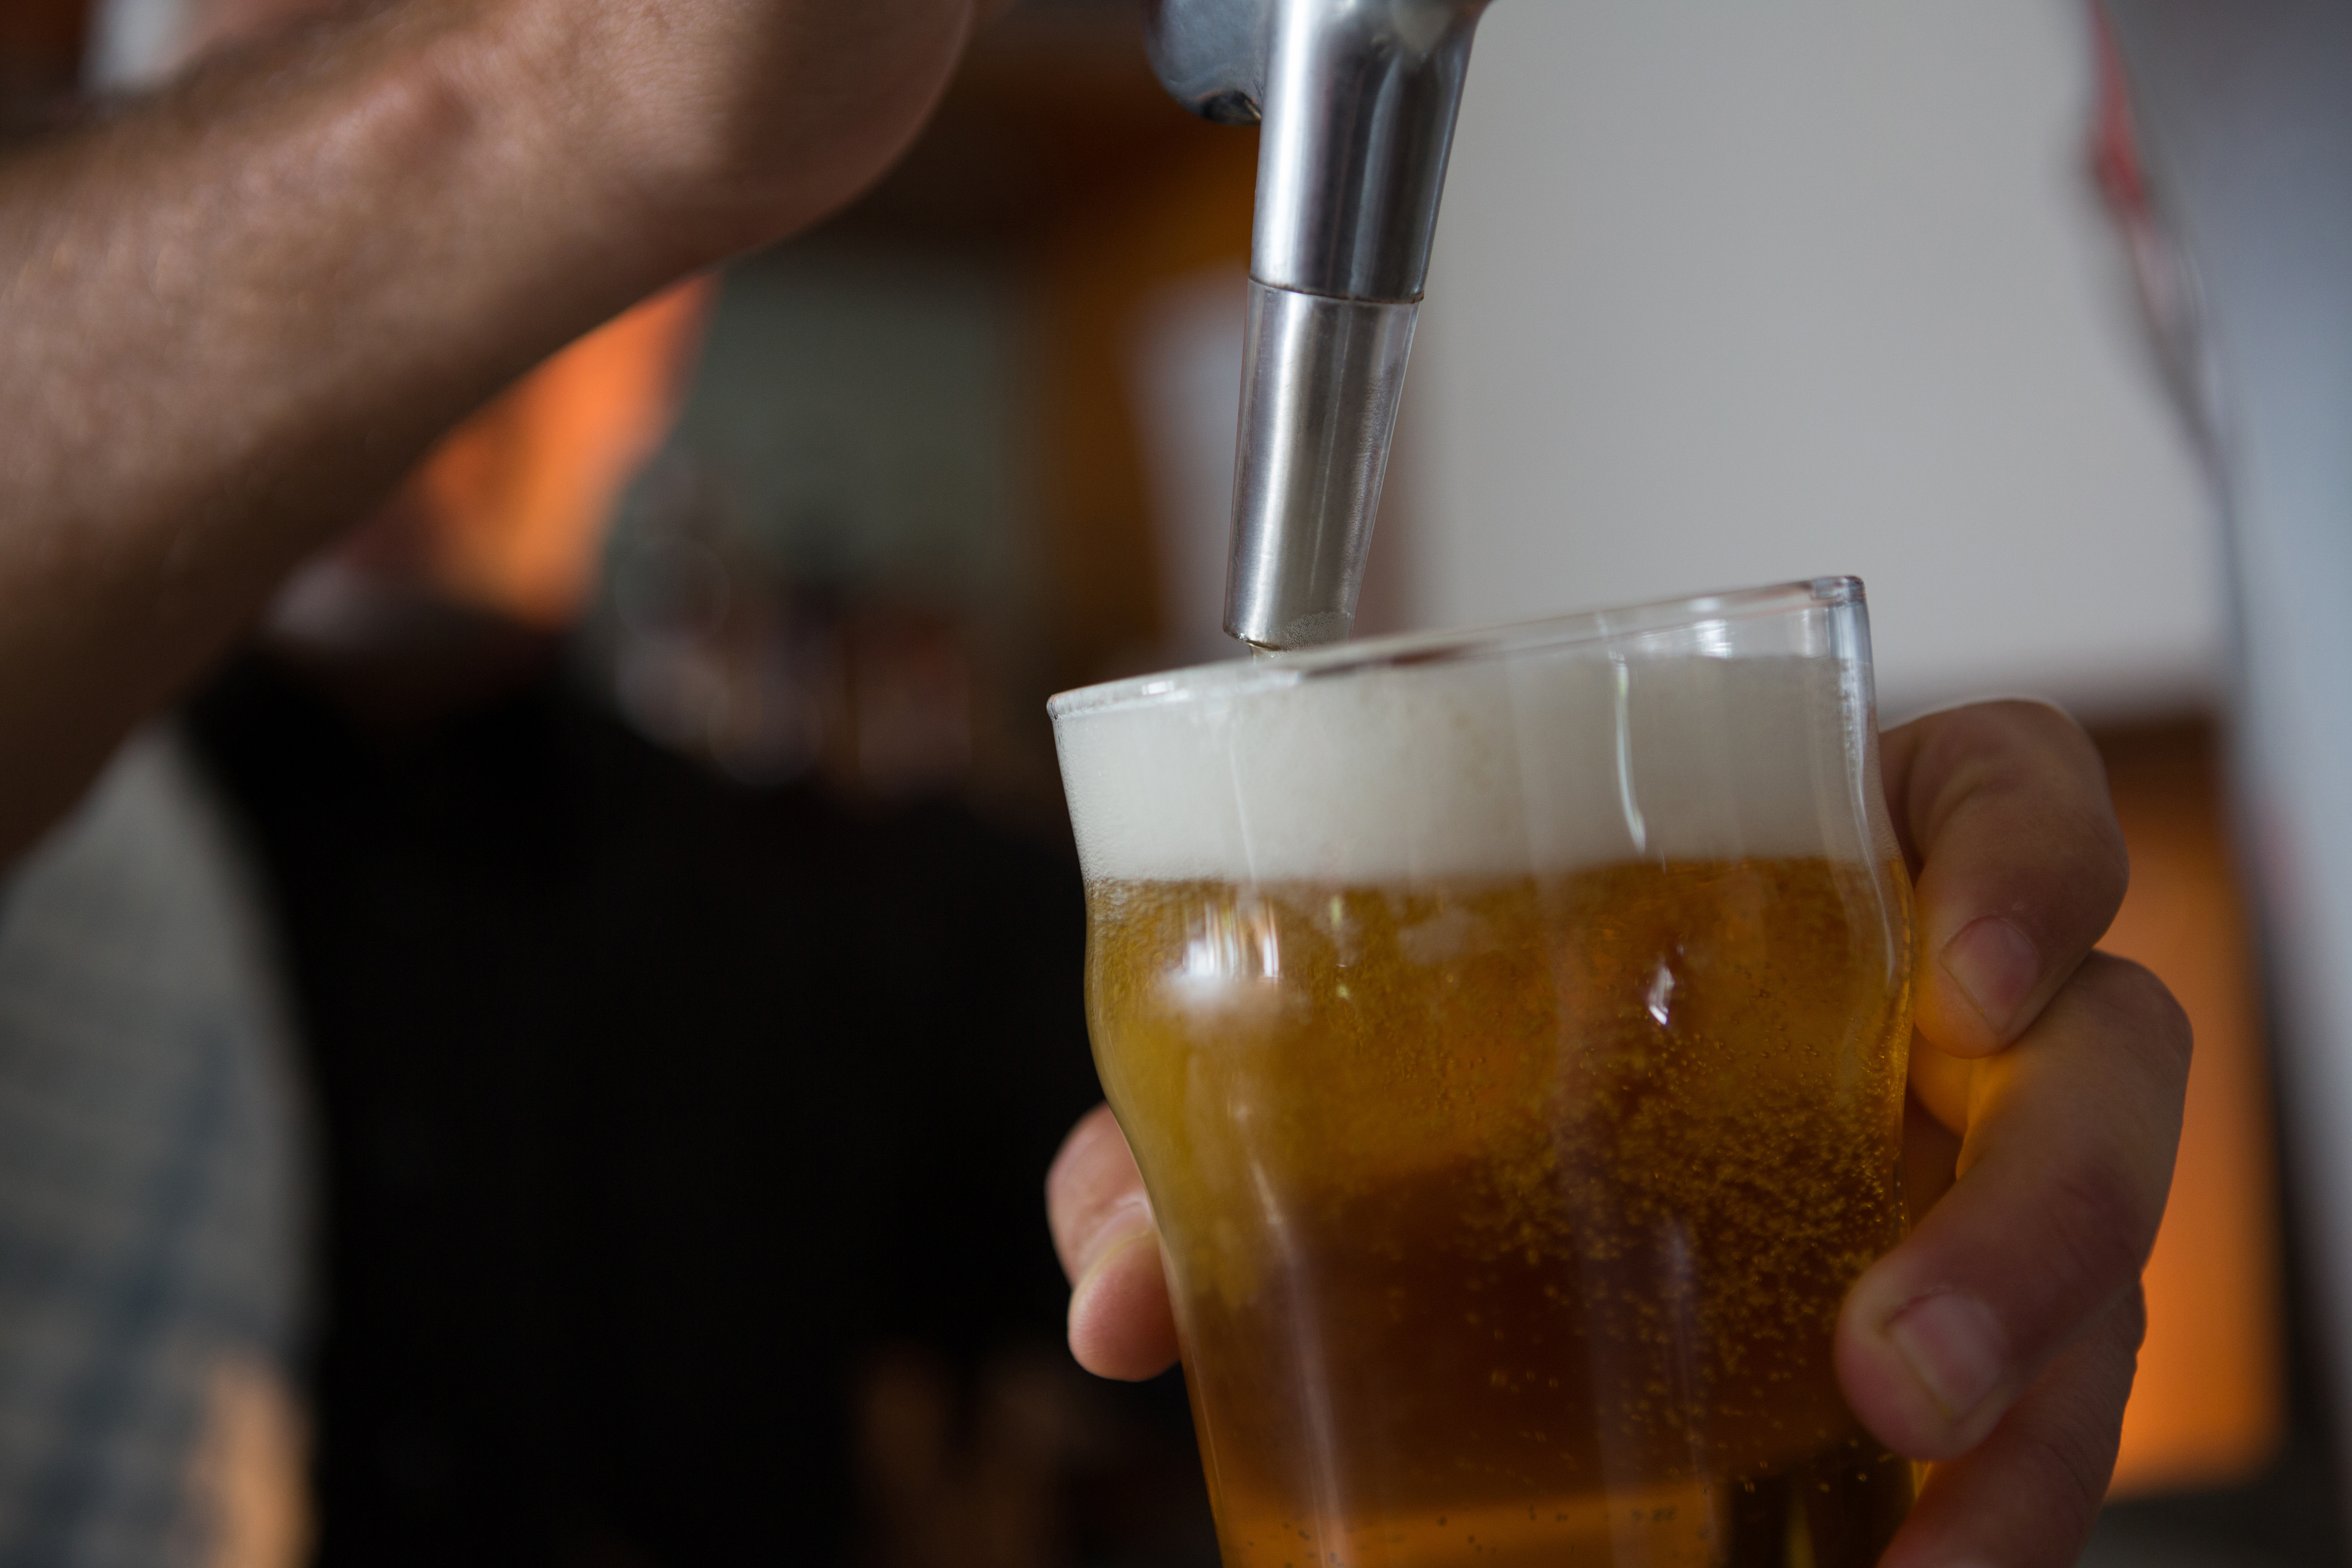 sörfőző sör töltelék söröspohárba sörpumpából i 2021 08 28 17 23 44 utc